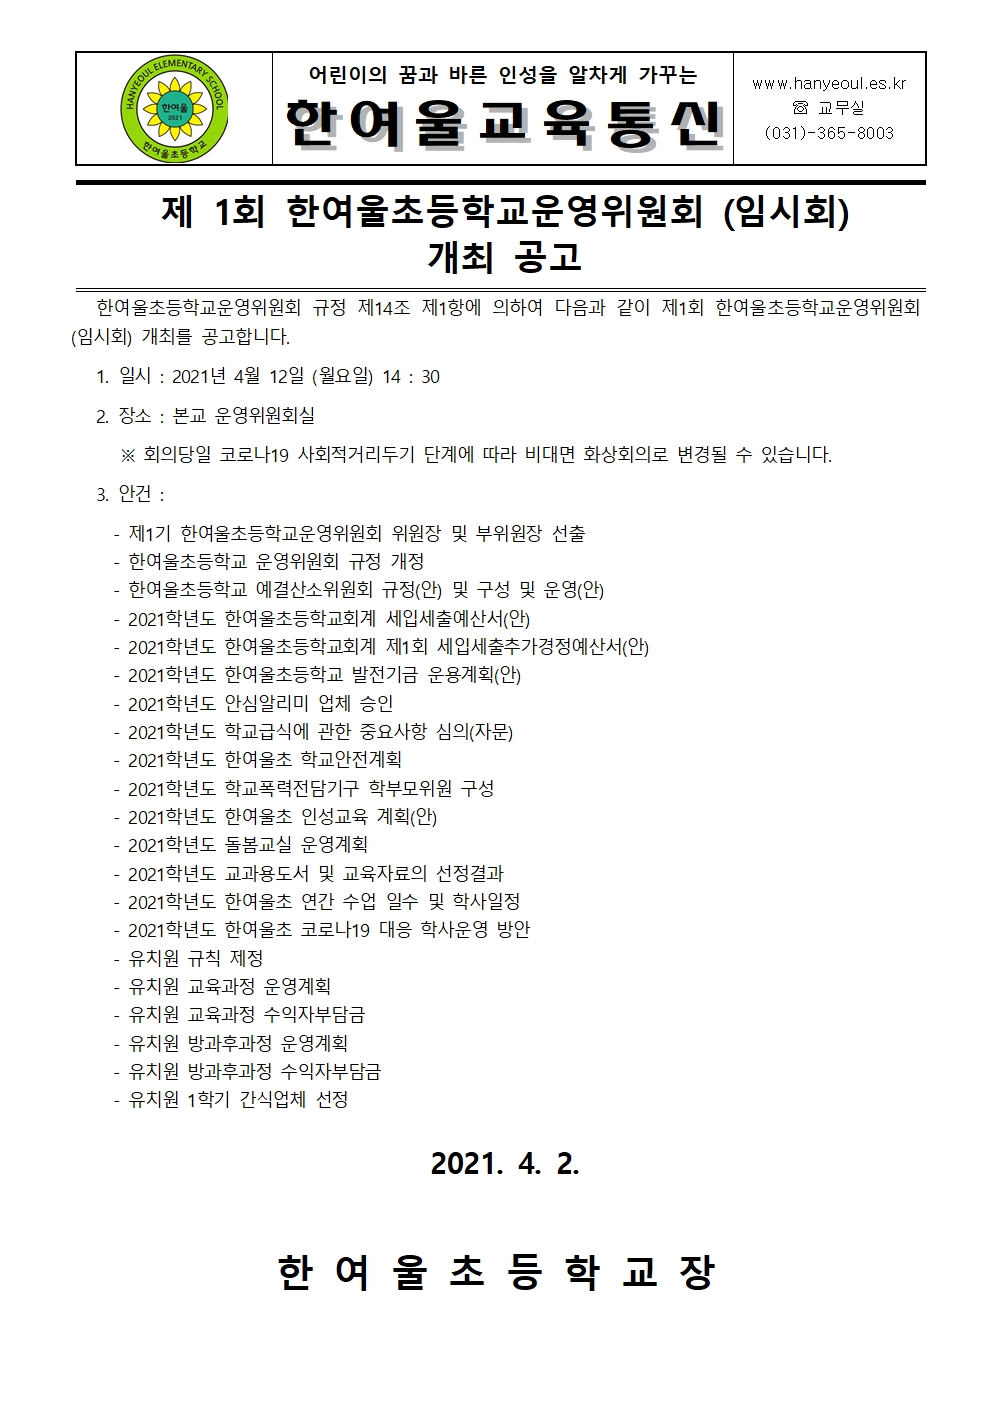 [일반] 제1회 한여울초등학교운영위원회 개최 공고의 첨부이미지 1